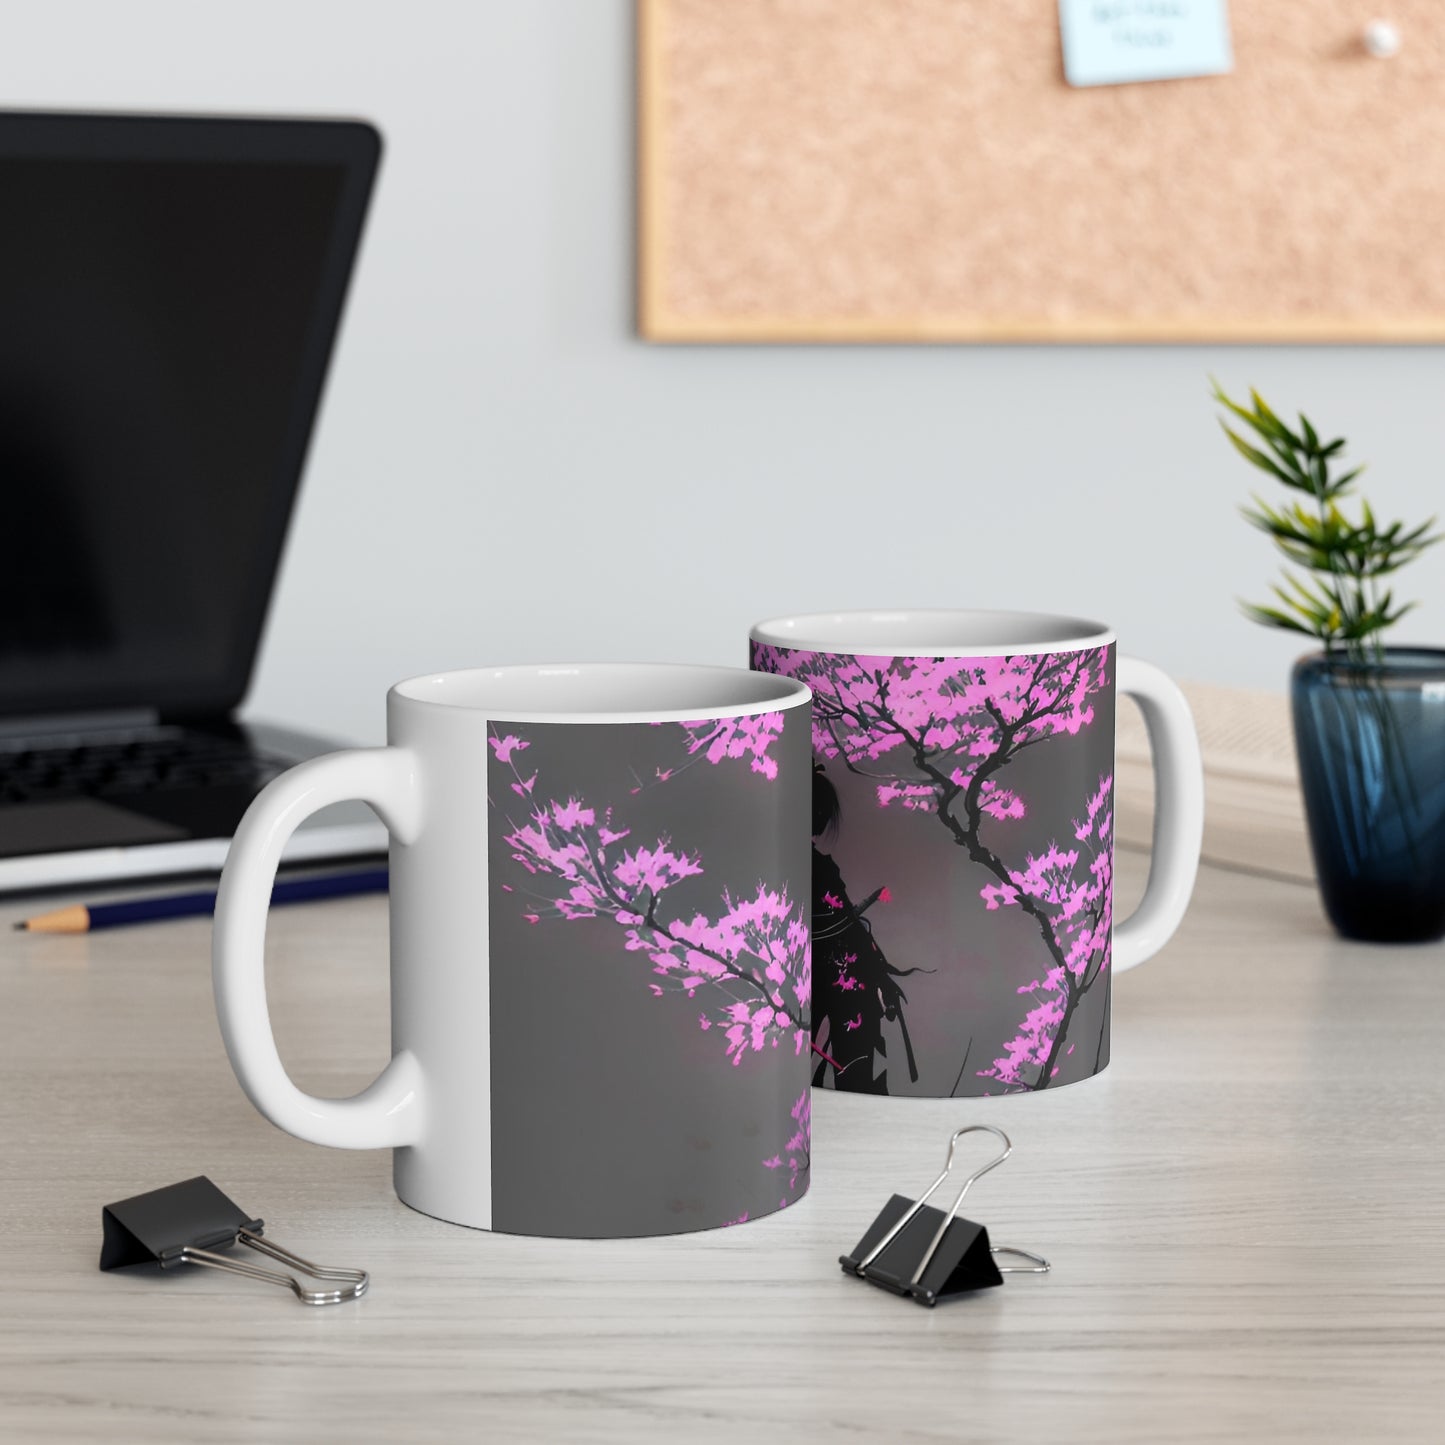 Cherry blossum 3 Ceramic Mug 11oz